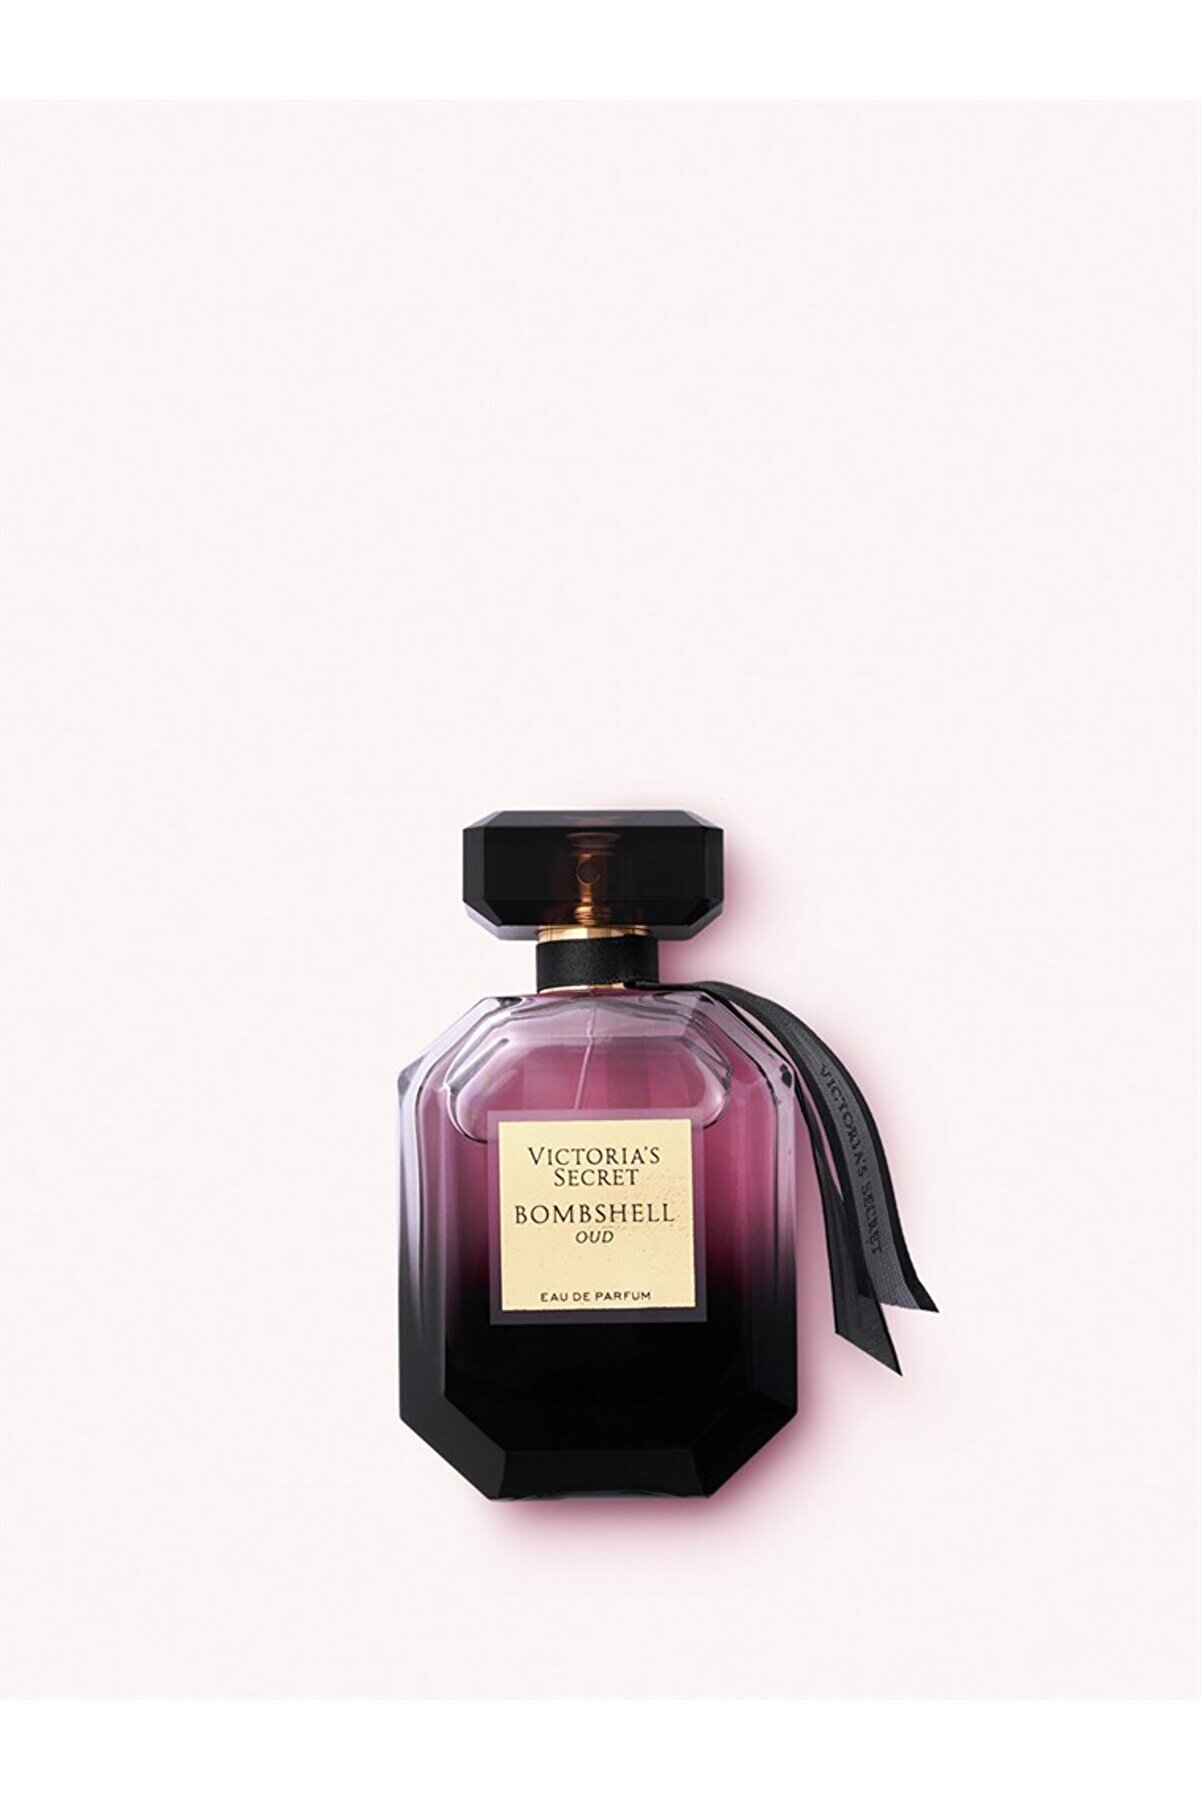 Victoria's Secret Bombshell Oud Eau De Parfum 50ml